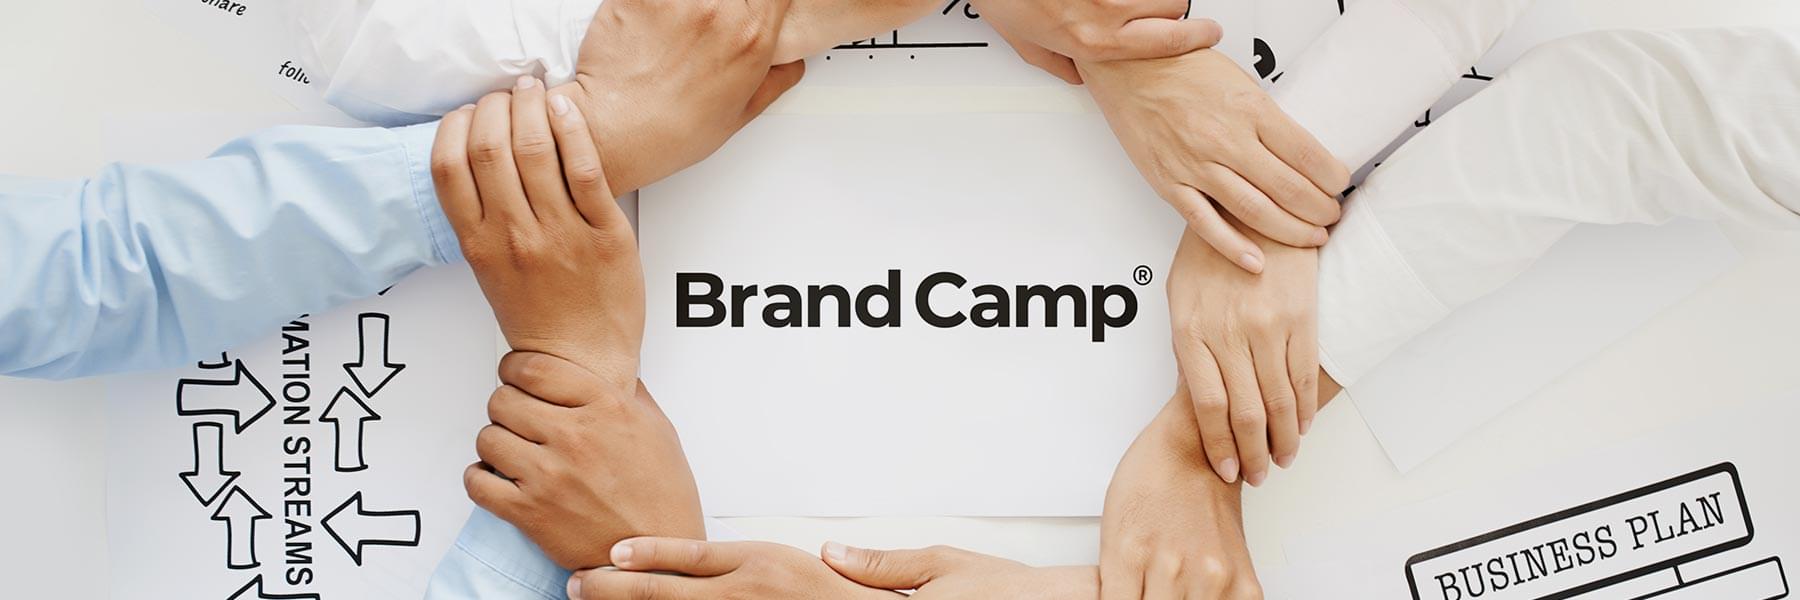 Brand Camp®